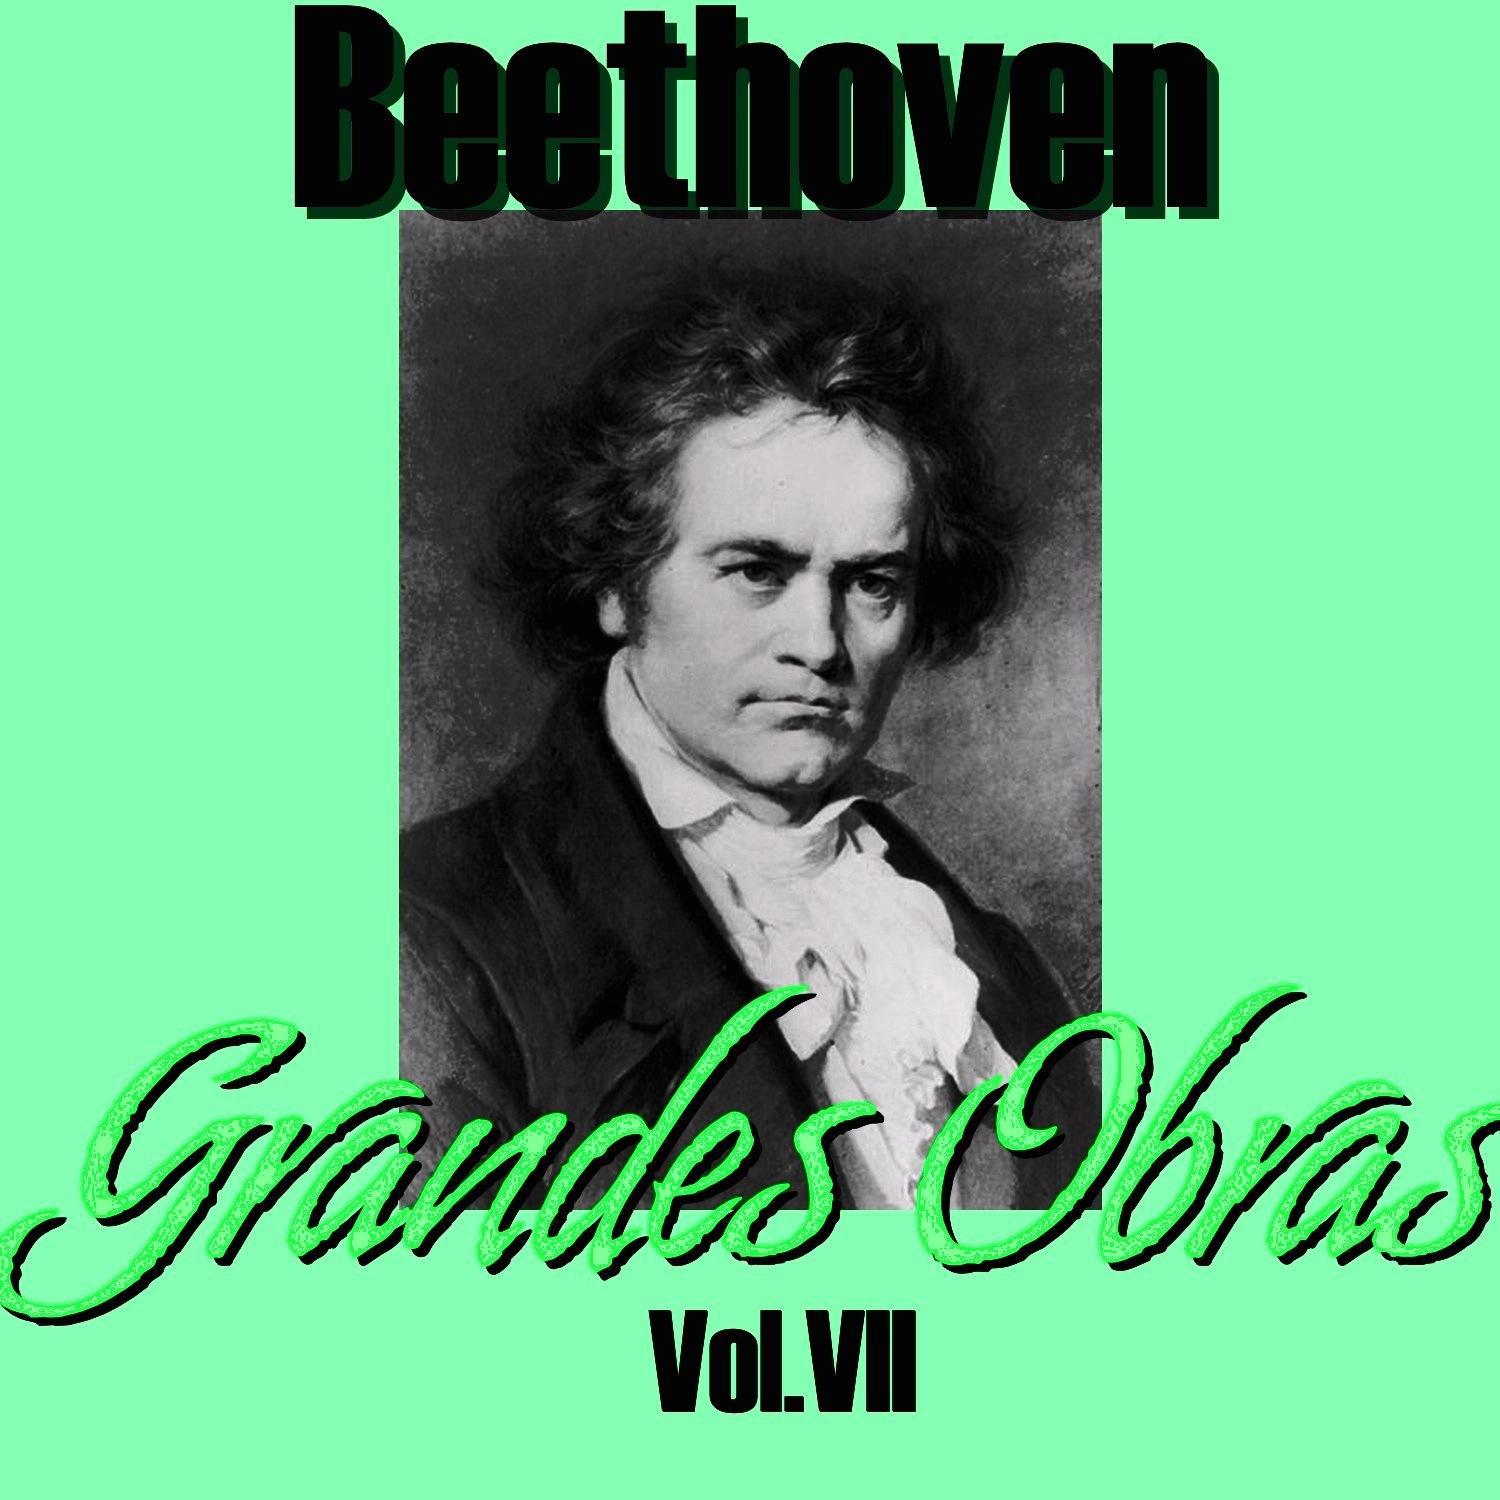 Beethoven Grandes Obras Vol.VII专辑